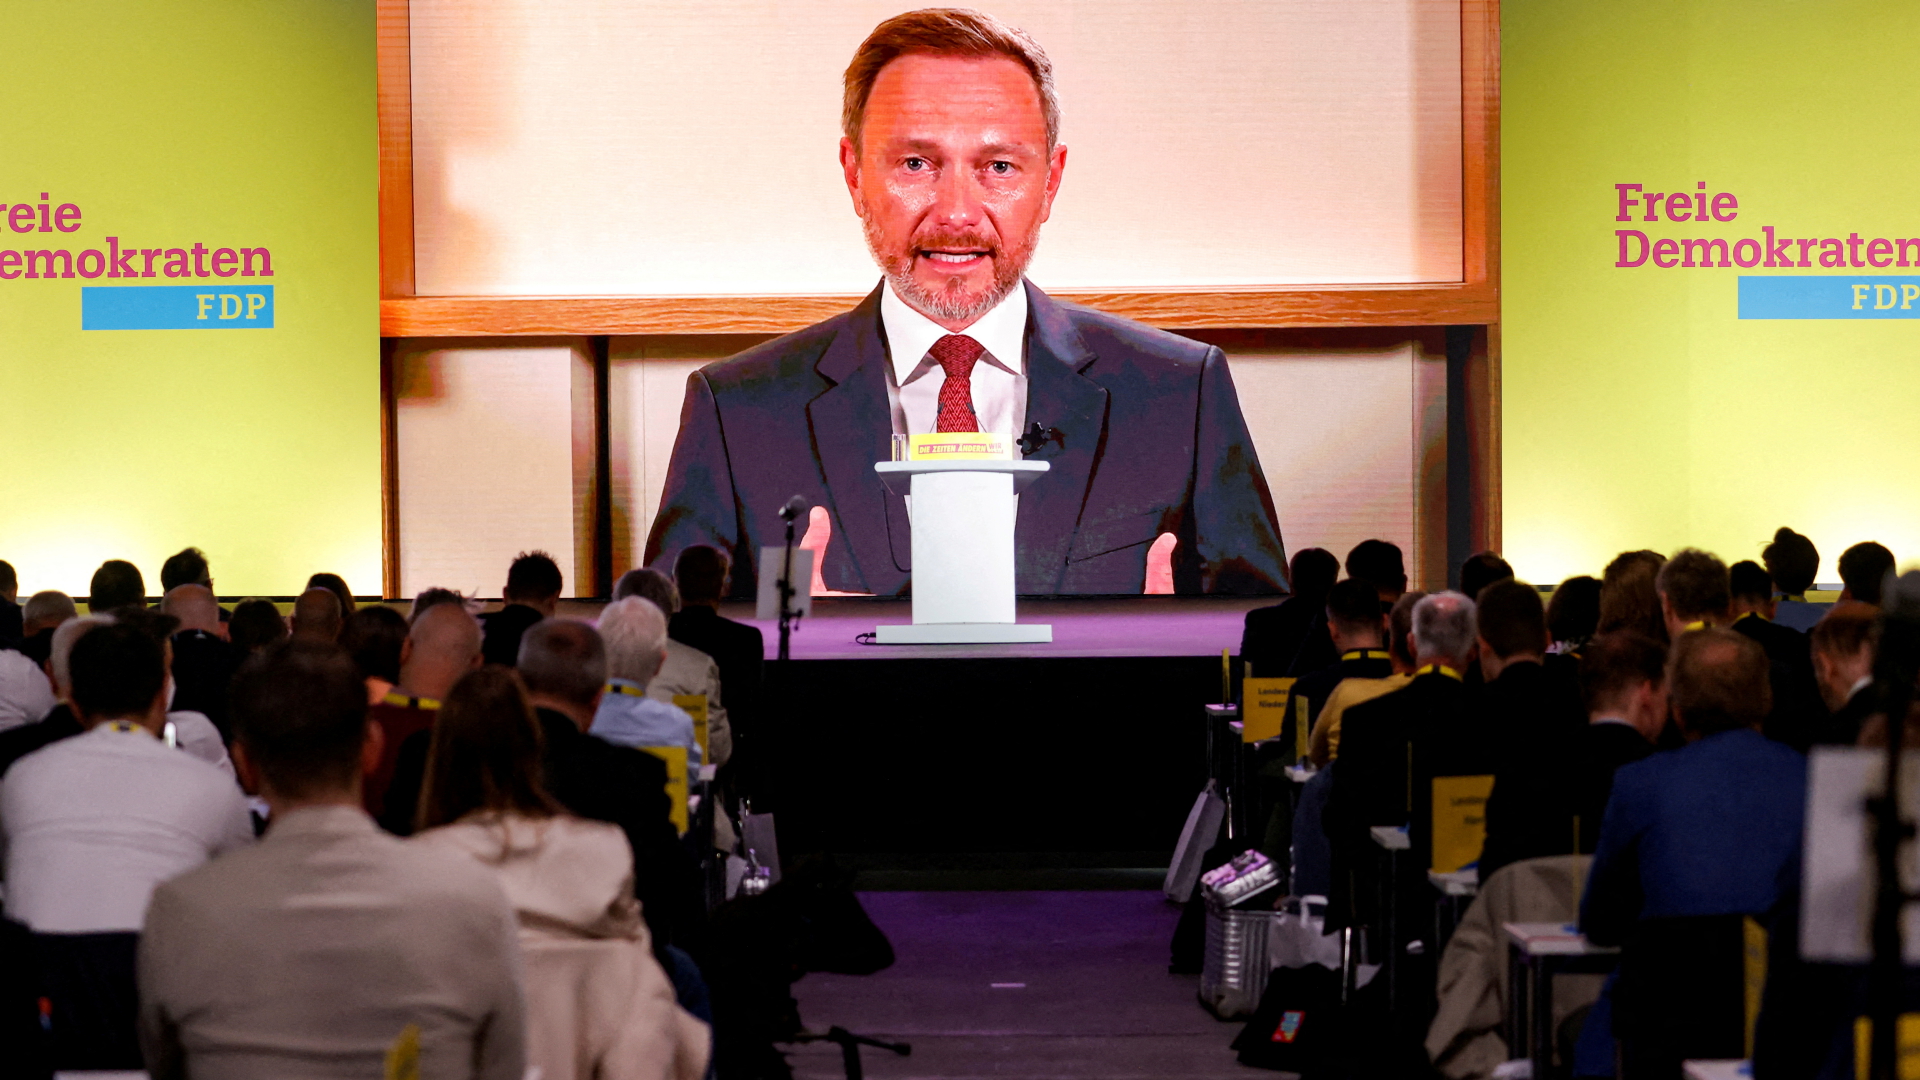 Der per Video zugeschaltete Parteichef Lindner während des FDP-Parteitags | REUTERS